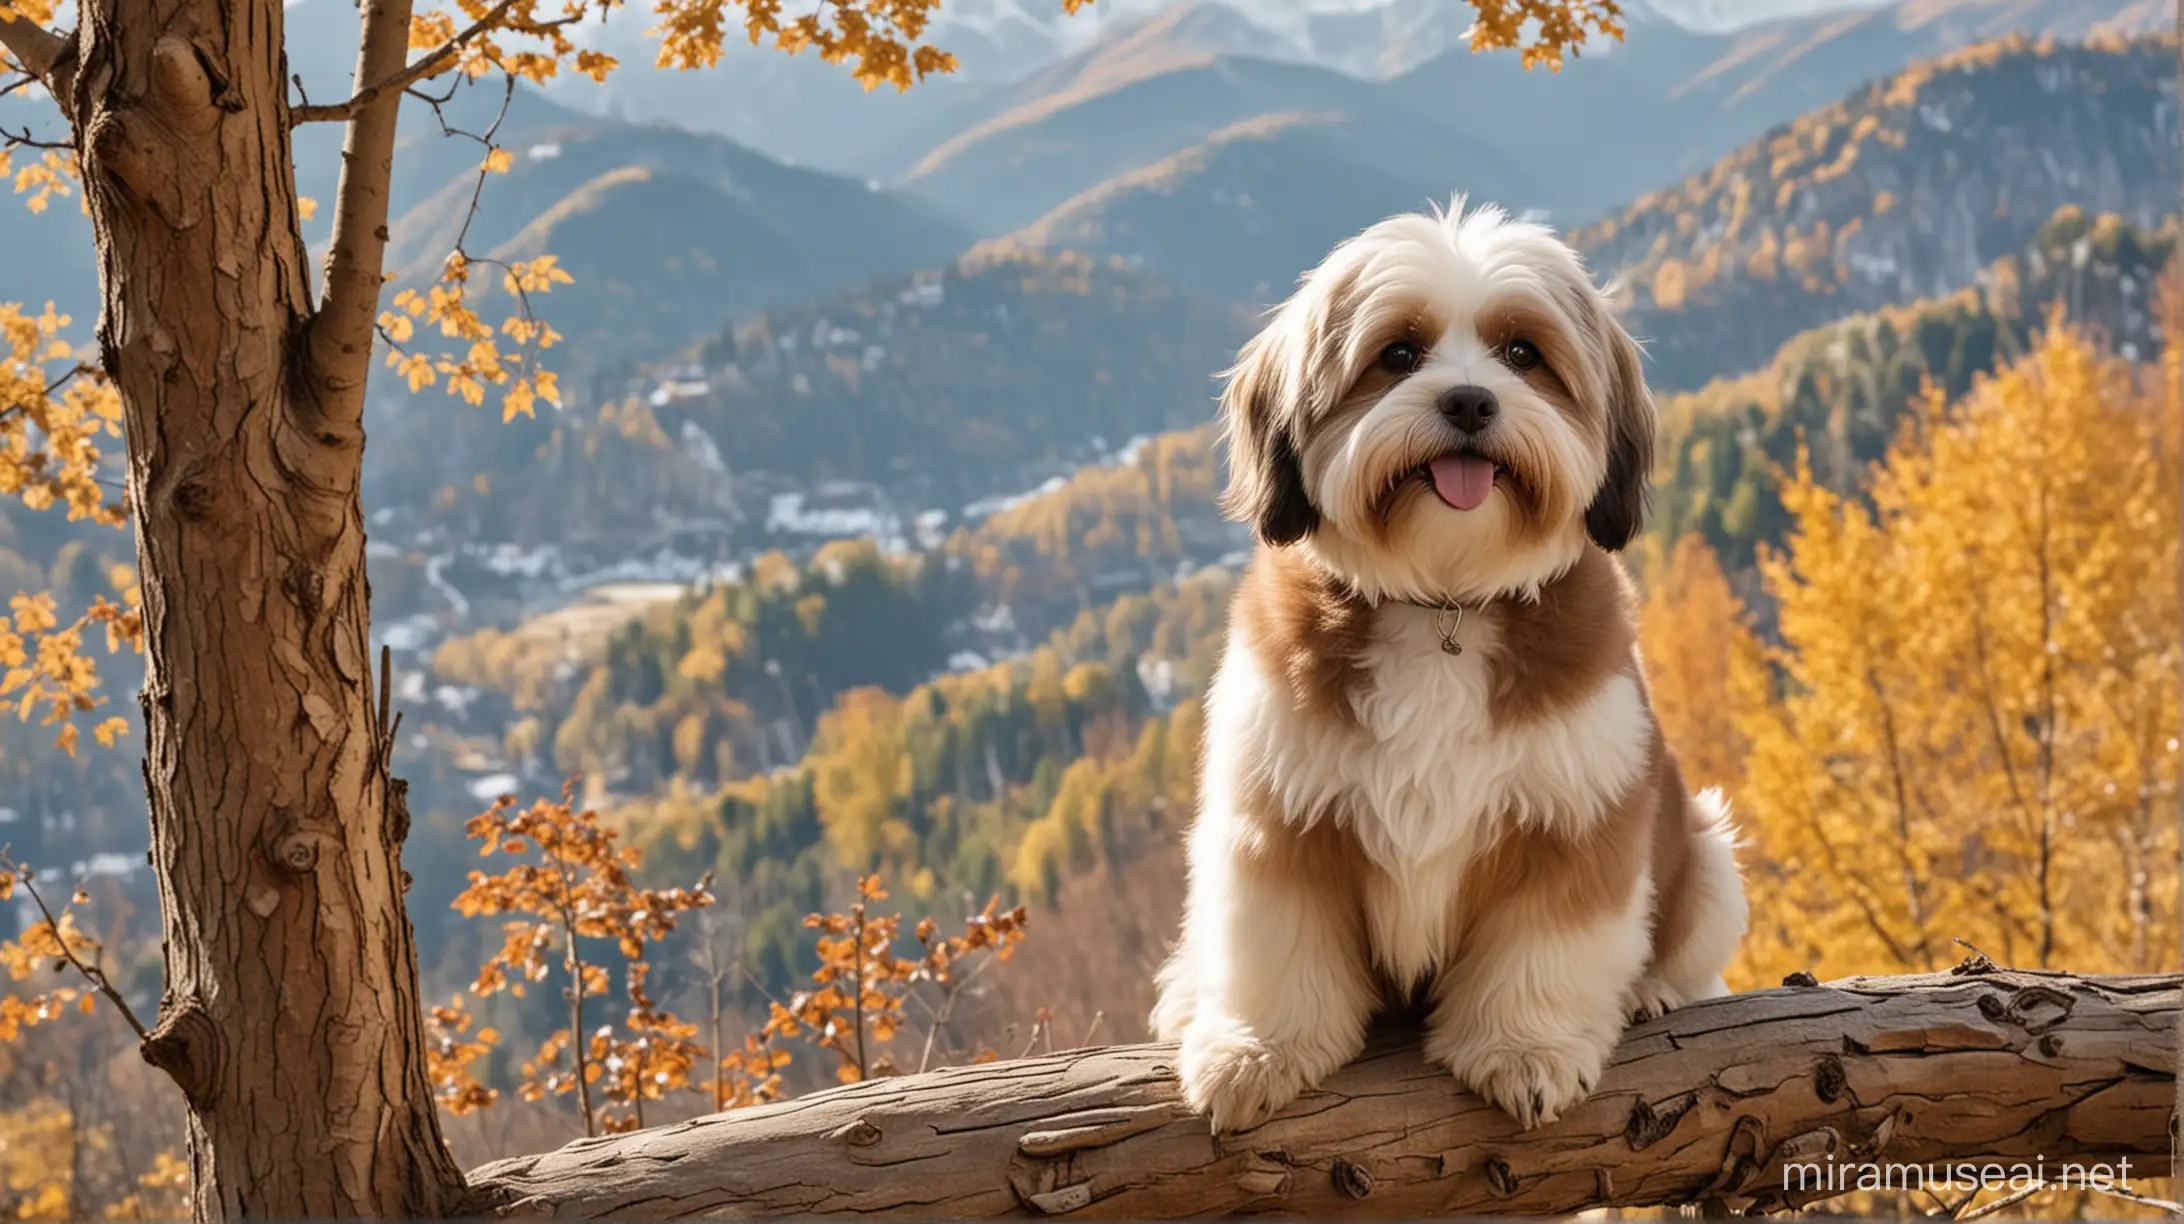 Auf dem Bild soll ein Havaneser (Hund) sein. Die Farbe vom Hund ist braun oder beige, gemustert. In der Nähe vom Hund sitzt ein großer Adler auf einem Baum. Die Szene ist in den Alpen.